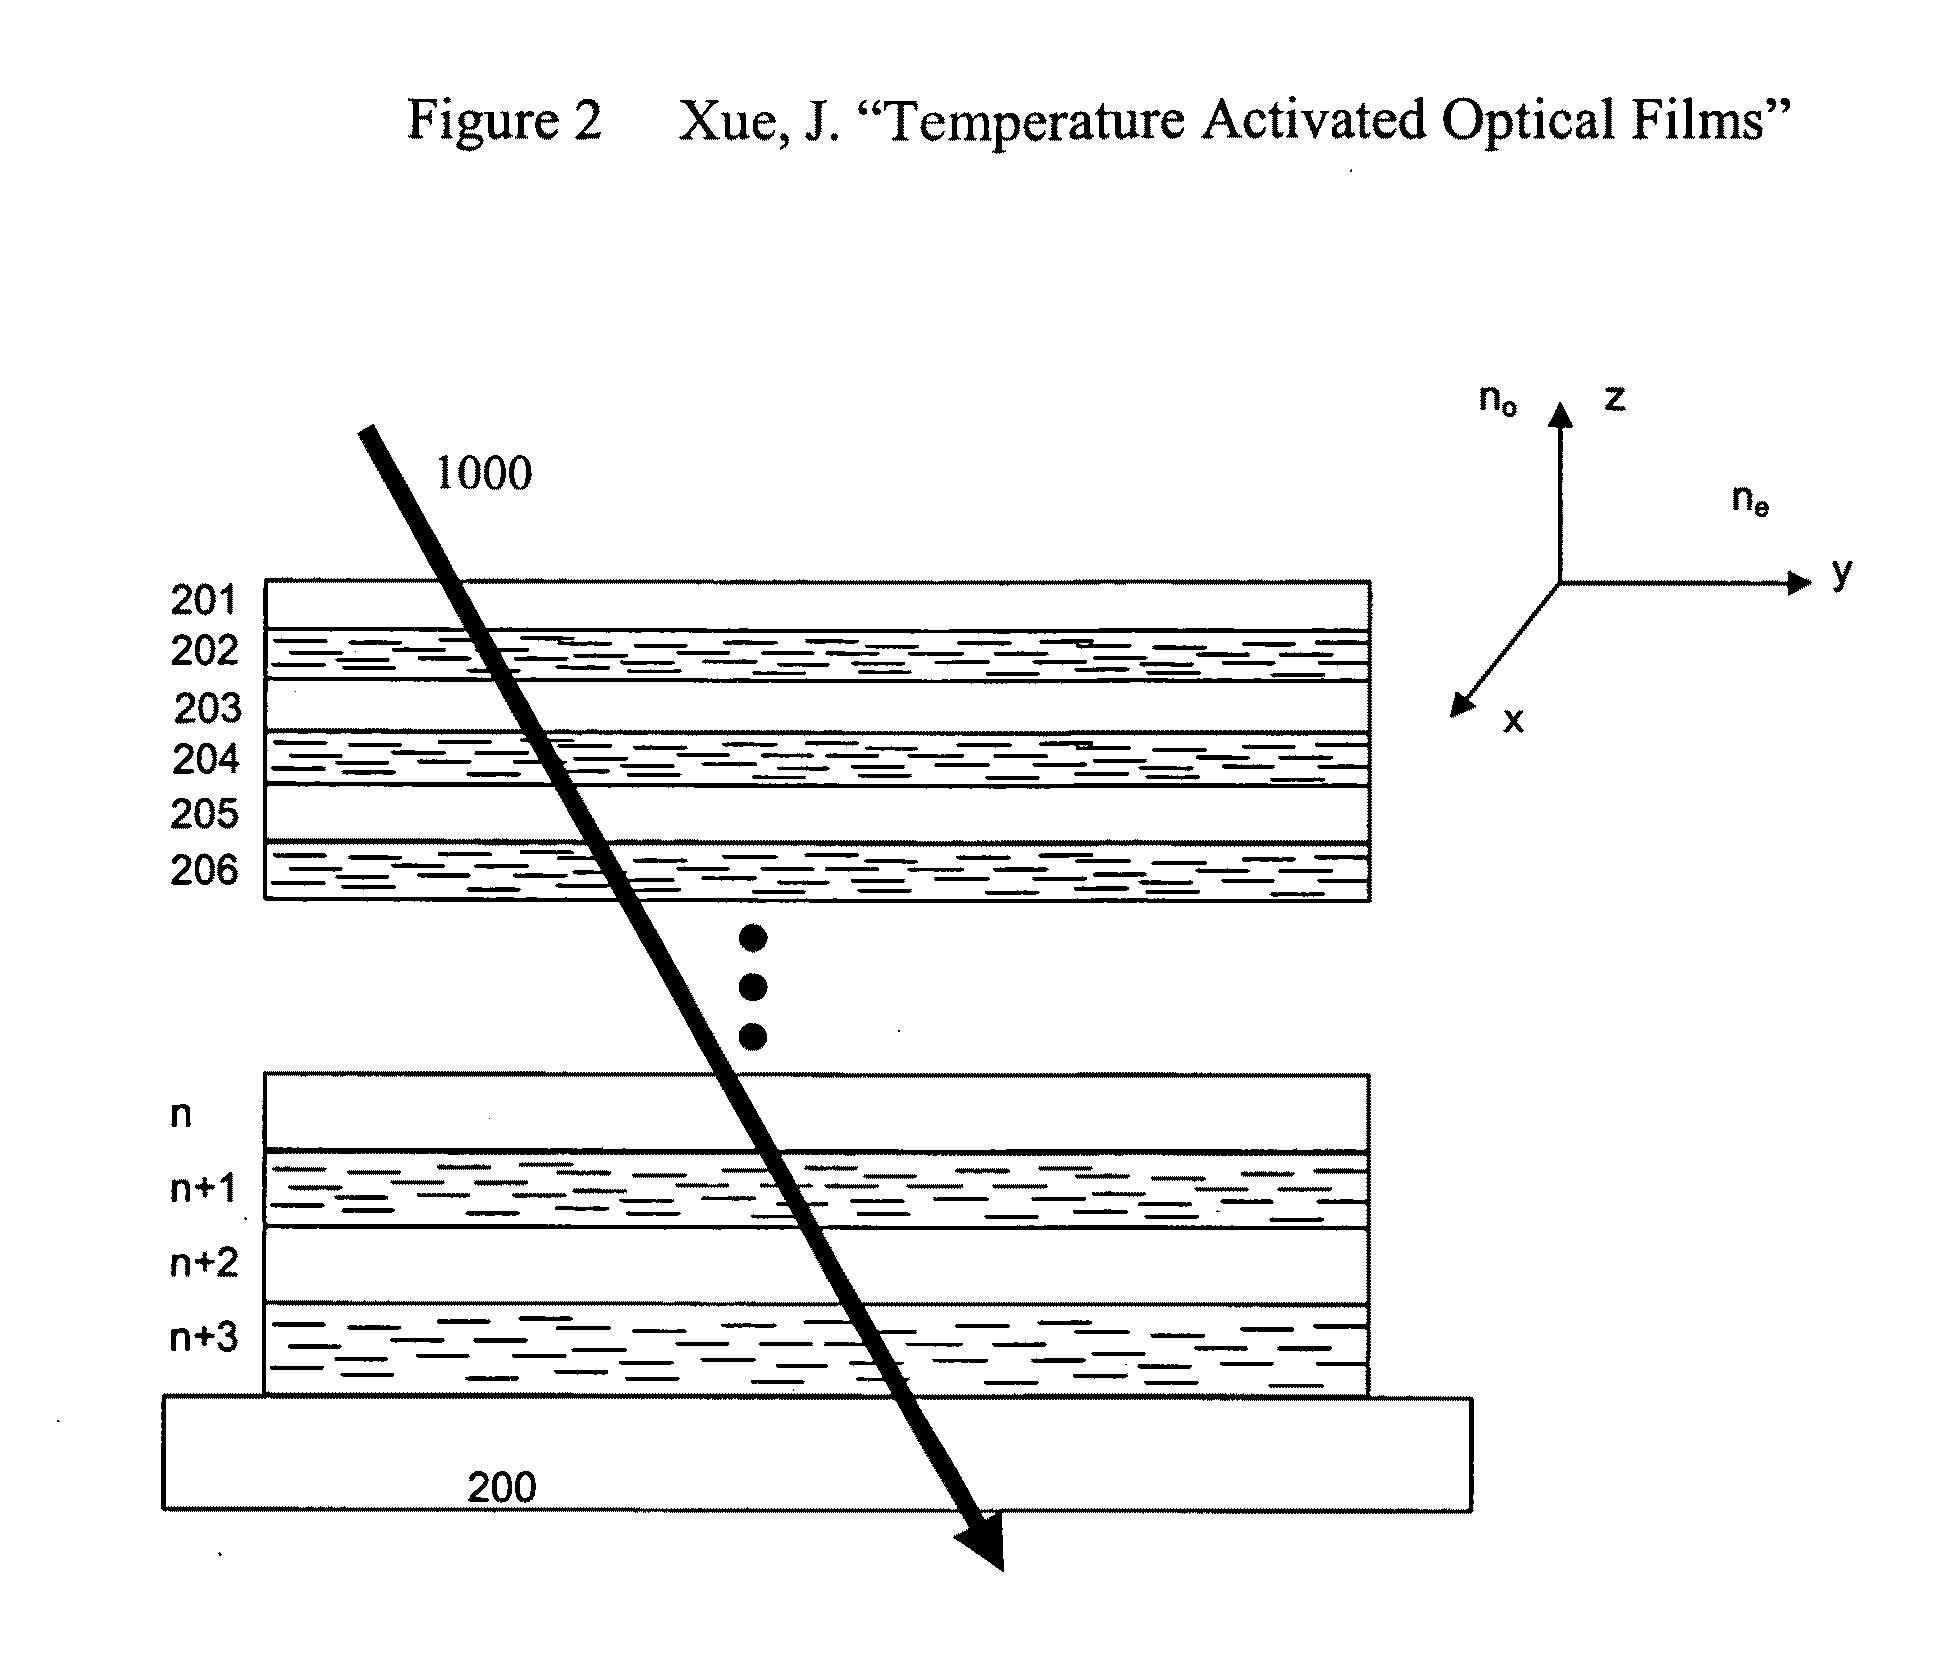 Temperature activated optical films